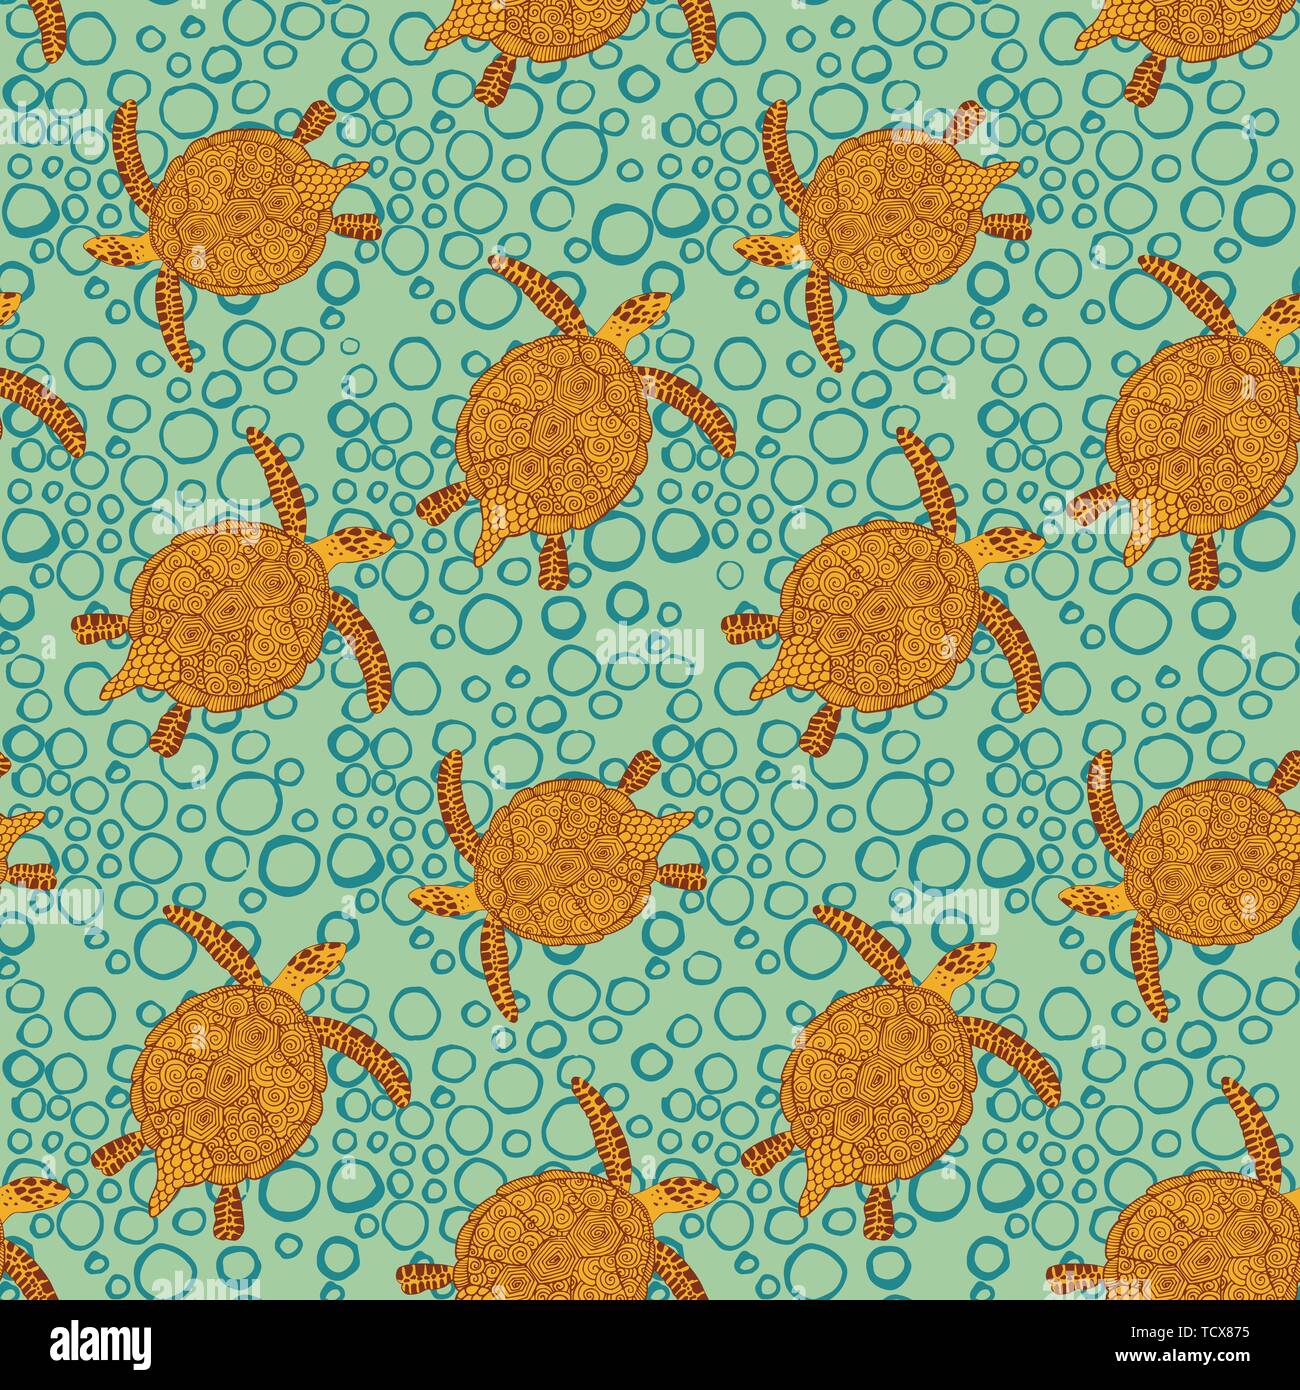 Nahtlose Muster mit Hand gezeichnete Schildkröten. Tier Hintergrund. Alle Elemente werden nicht beschnitten und unter Maske versteckt. Stock Vektor